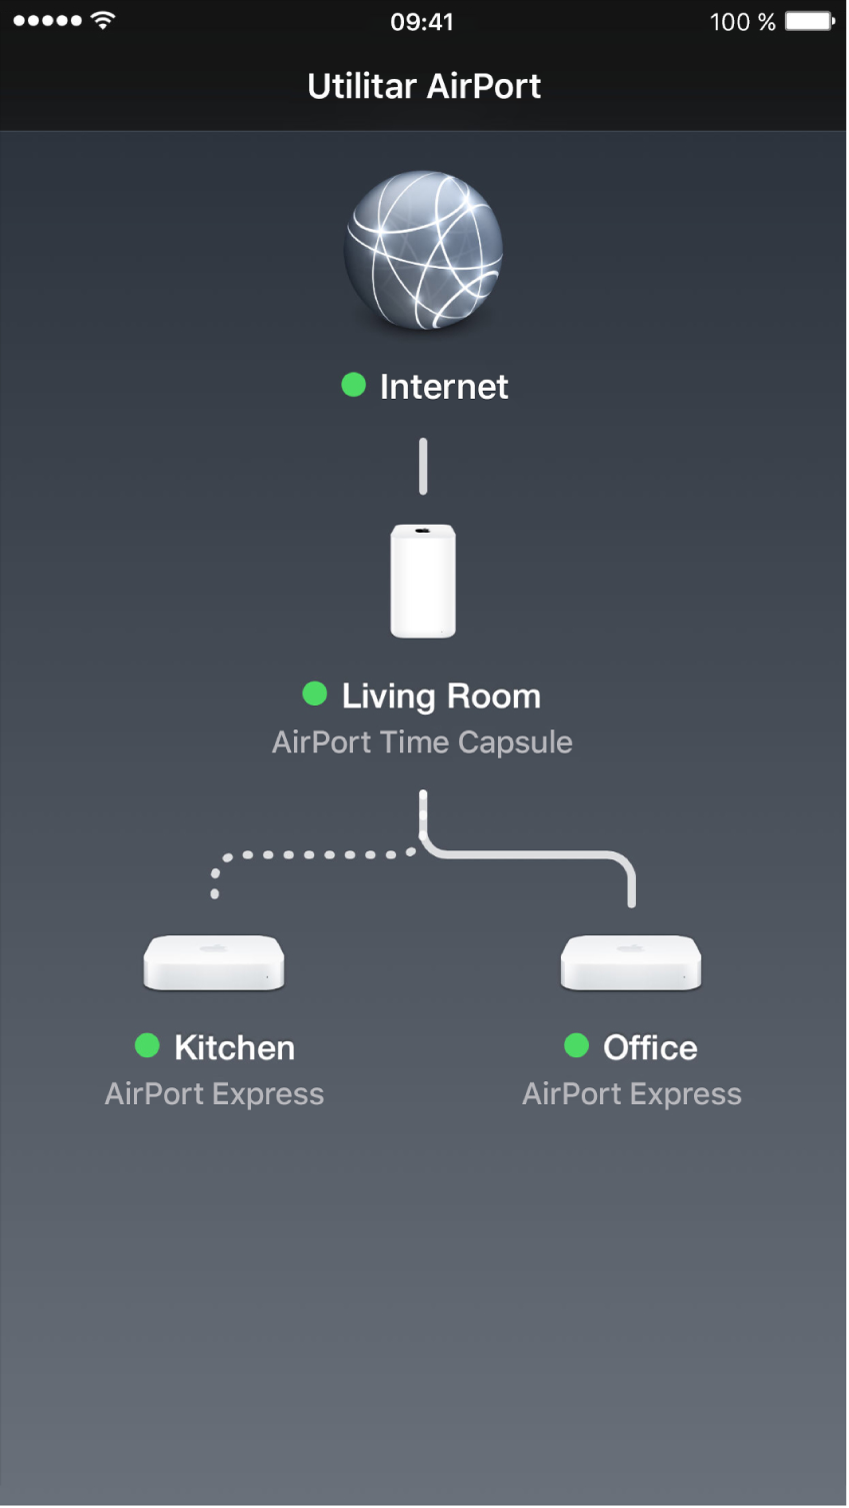 Prezentarea grafică în Utilitar AirPort pentru iOS.